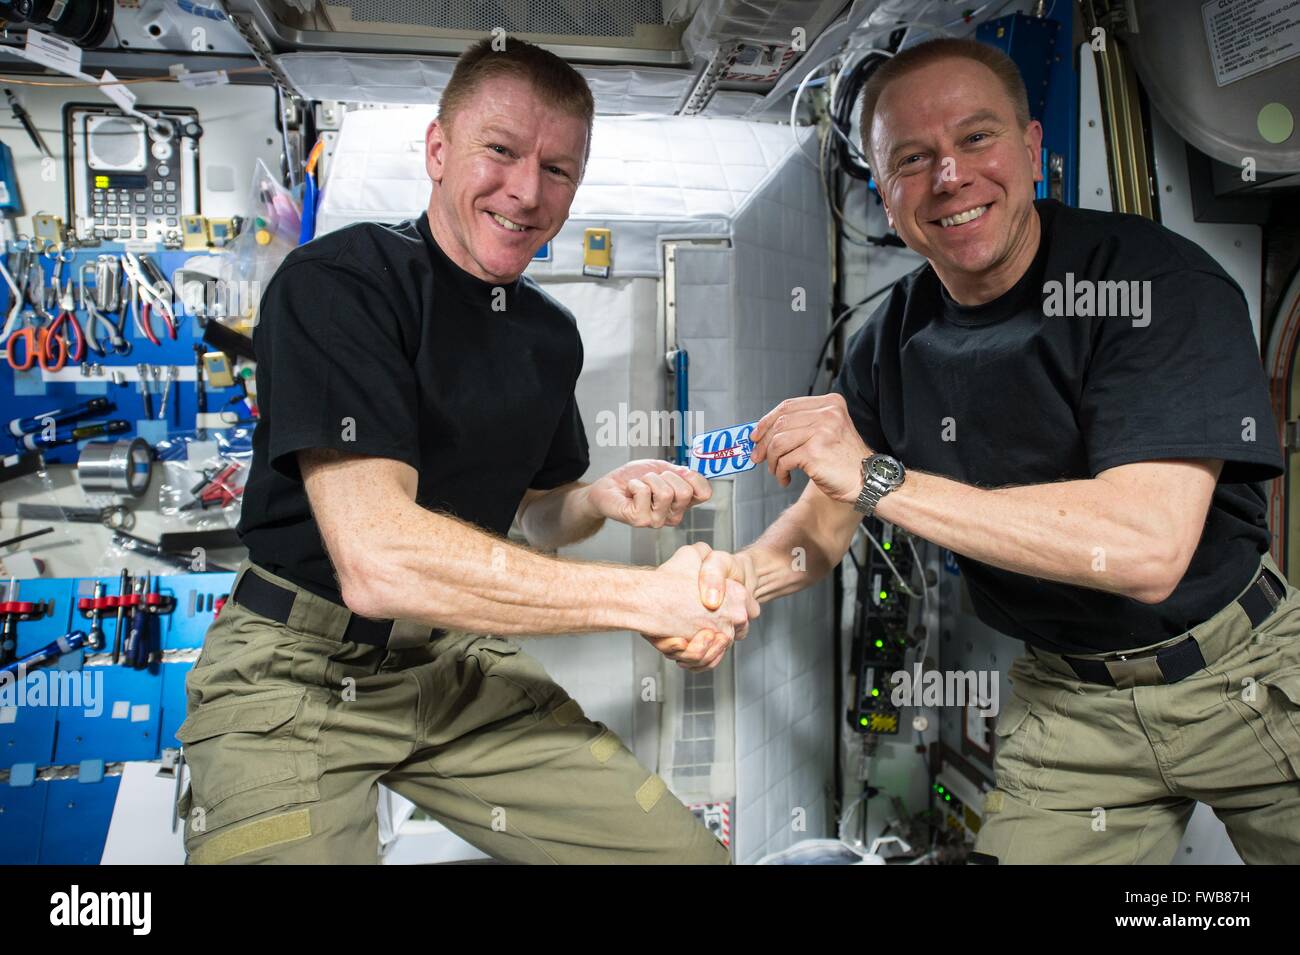 Astronauta americano Tim Kopra, destra presenta Agenzia Spaziale Europea astronauta Tim Peake con una patch per commemorare il suo centesimo giorno nello spazio a bordo della Stazione Spaziale Internazionale il 24 marzo 2016 in orbita intorno alla terra. Foto Stock